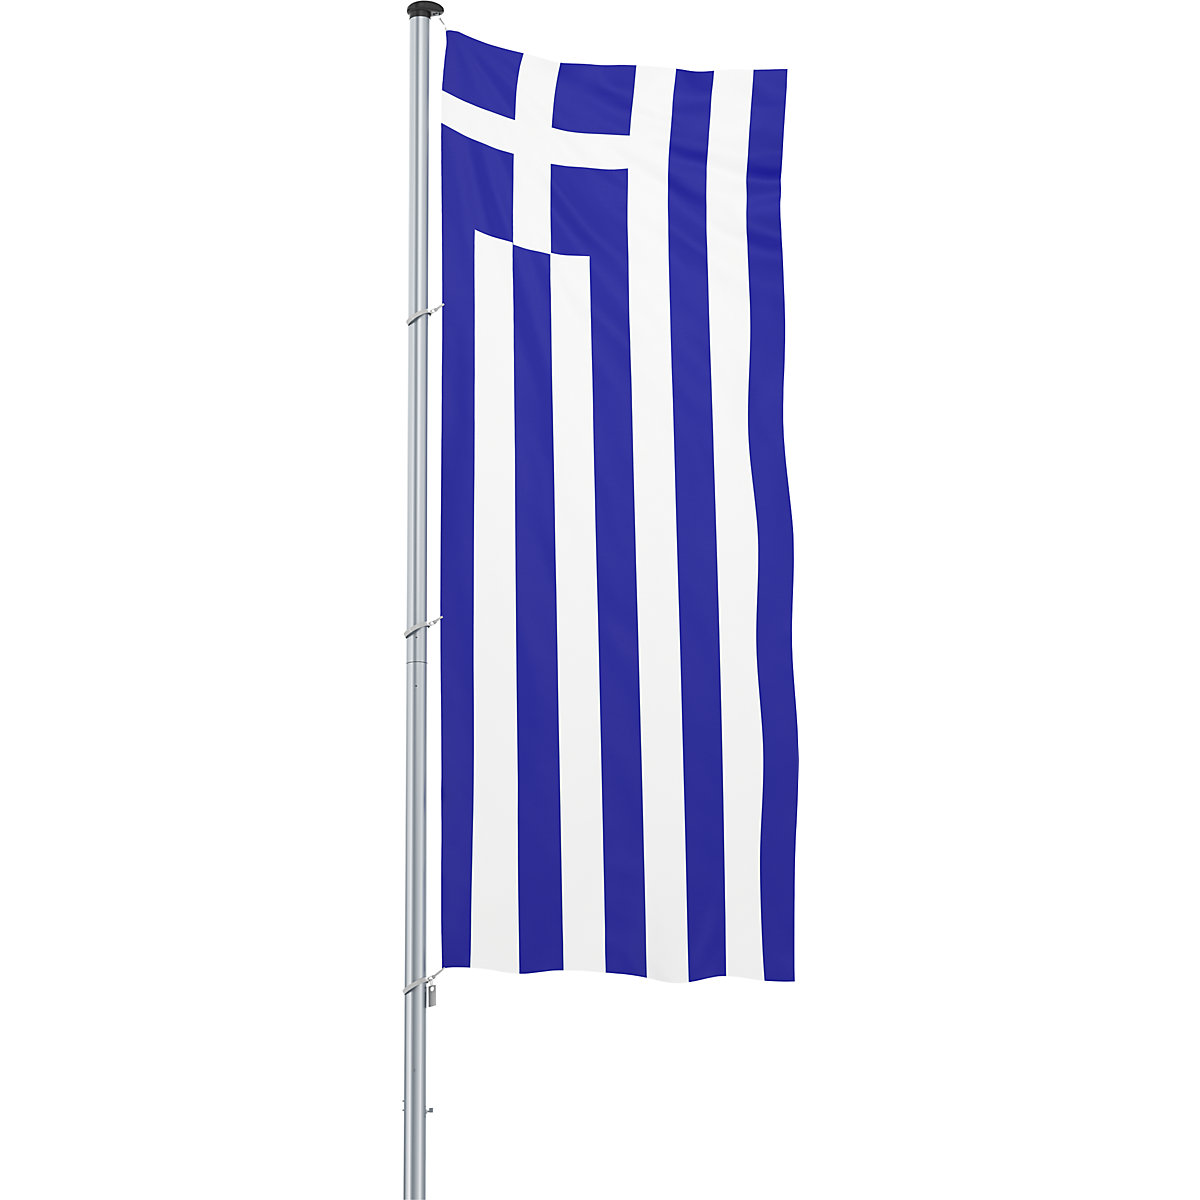 Mannus – Bandera para izar/bandera del país, formato 1,2 x 3 m, Grecia